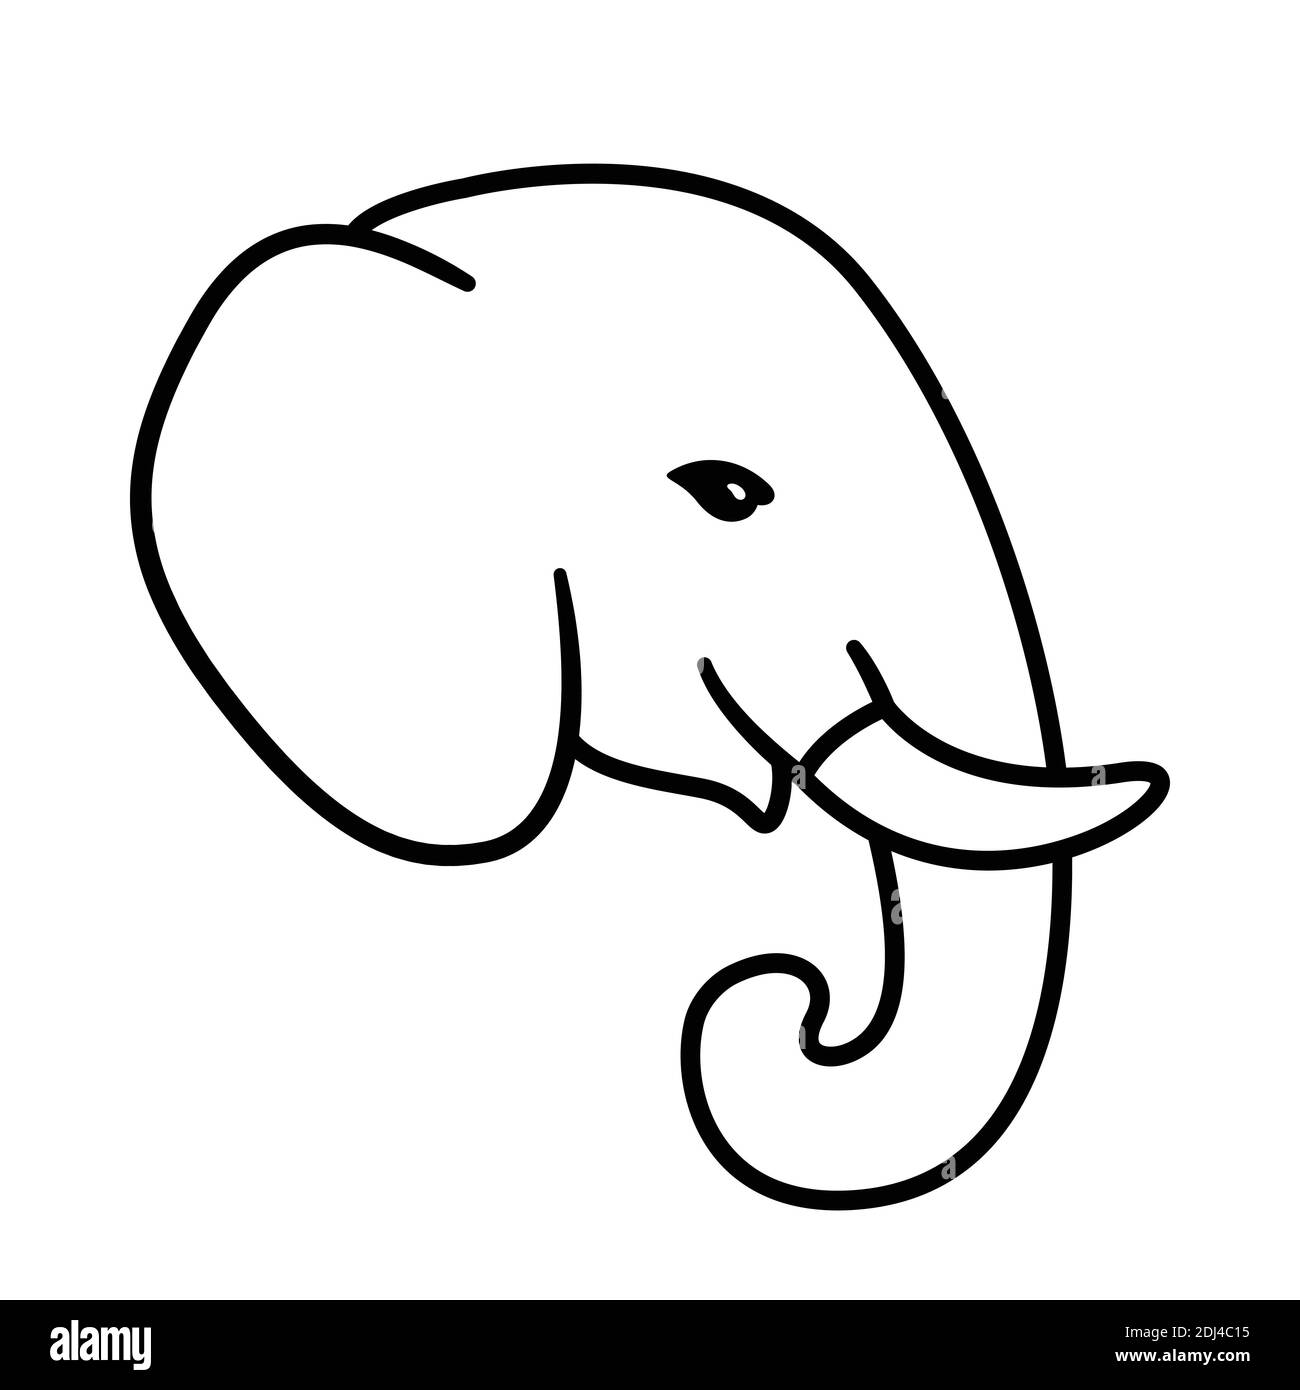 Cabeza de elefante de dibujos animados. Dibujo de perfil de elefante sencillo, línea blanca y negra. Ilustración de clip vectorial. Ilustración del Vector